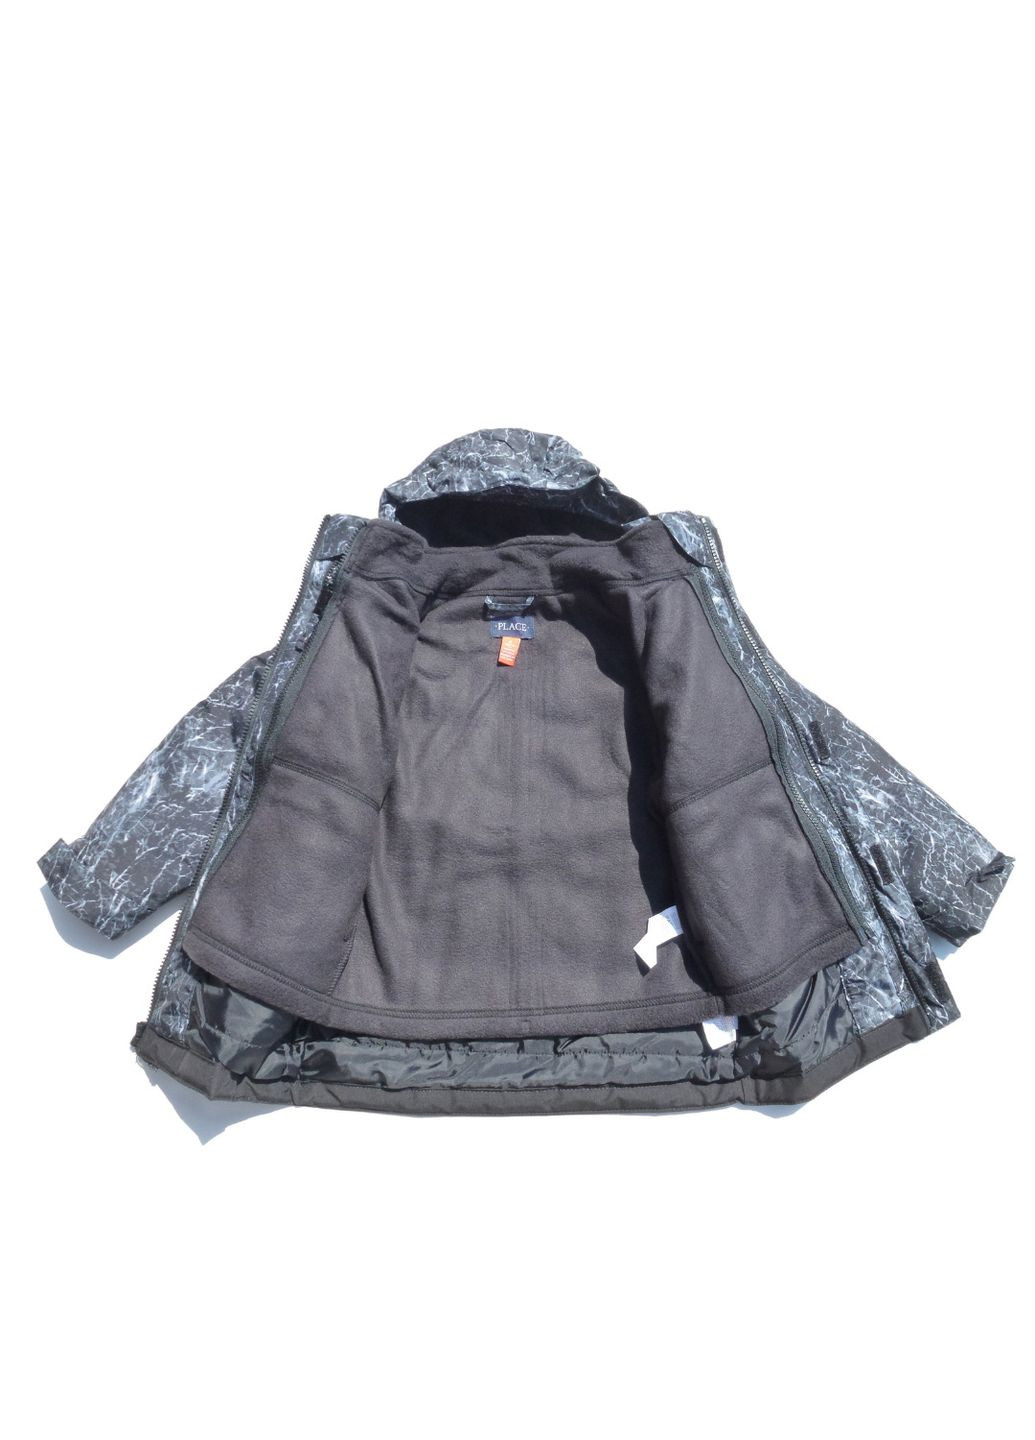 Комбинированная зимняя куртка зимняя детская (деми+флисовая ветровка) 3 в 1, 98-104 см, 3-4 р The Children's Place